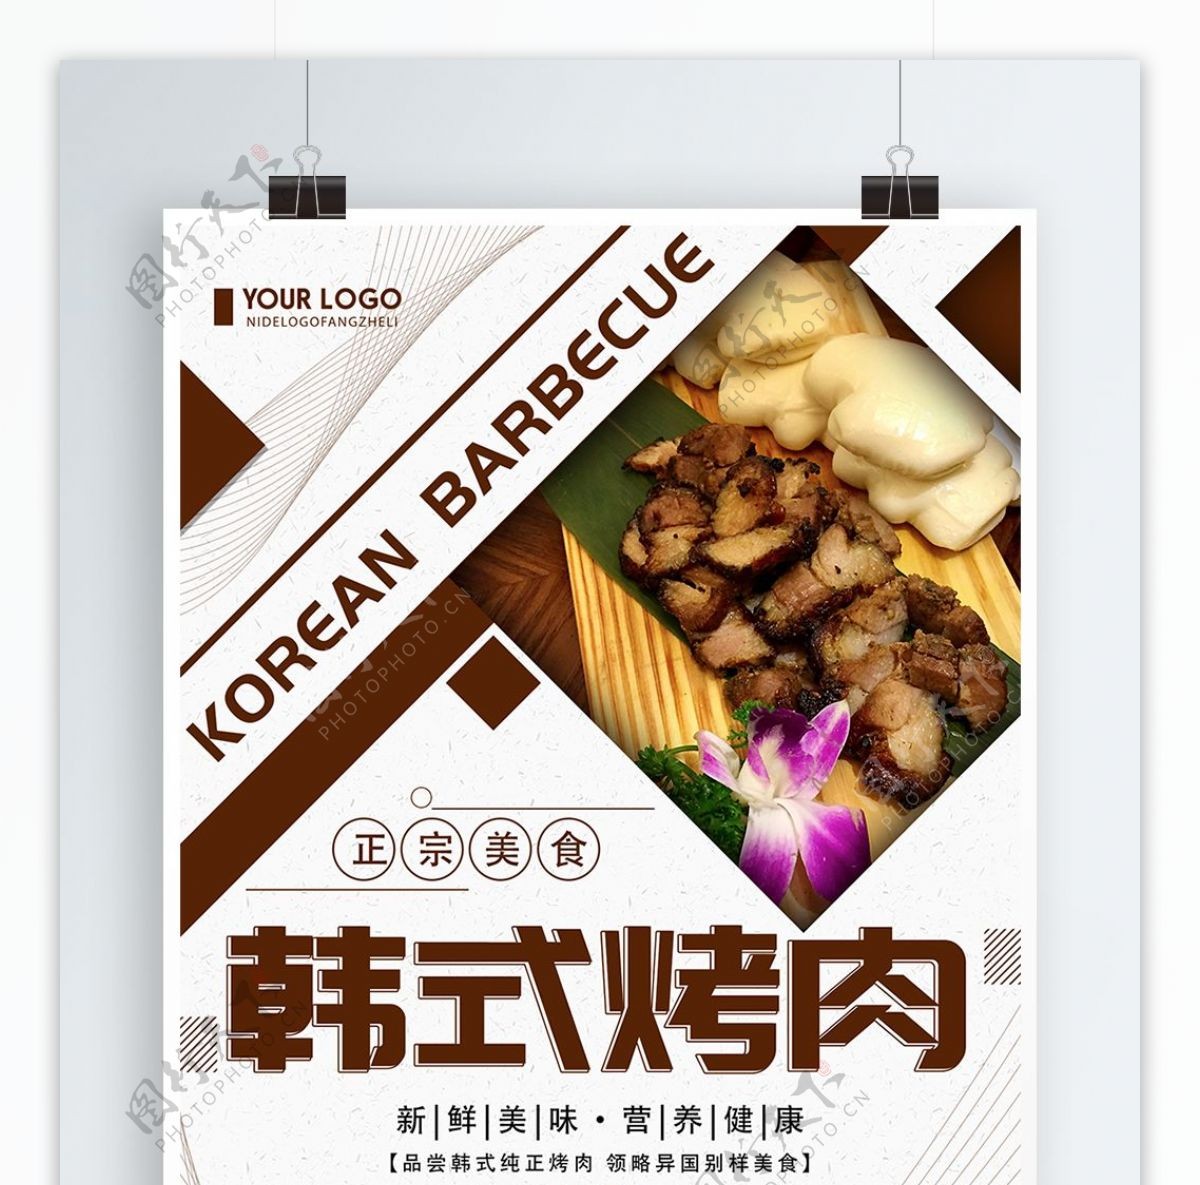 简约创意韩式烤肉美食宣传海报